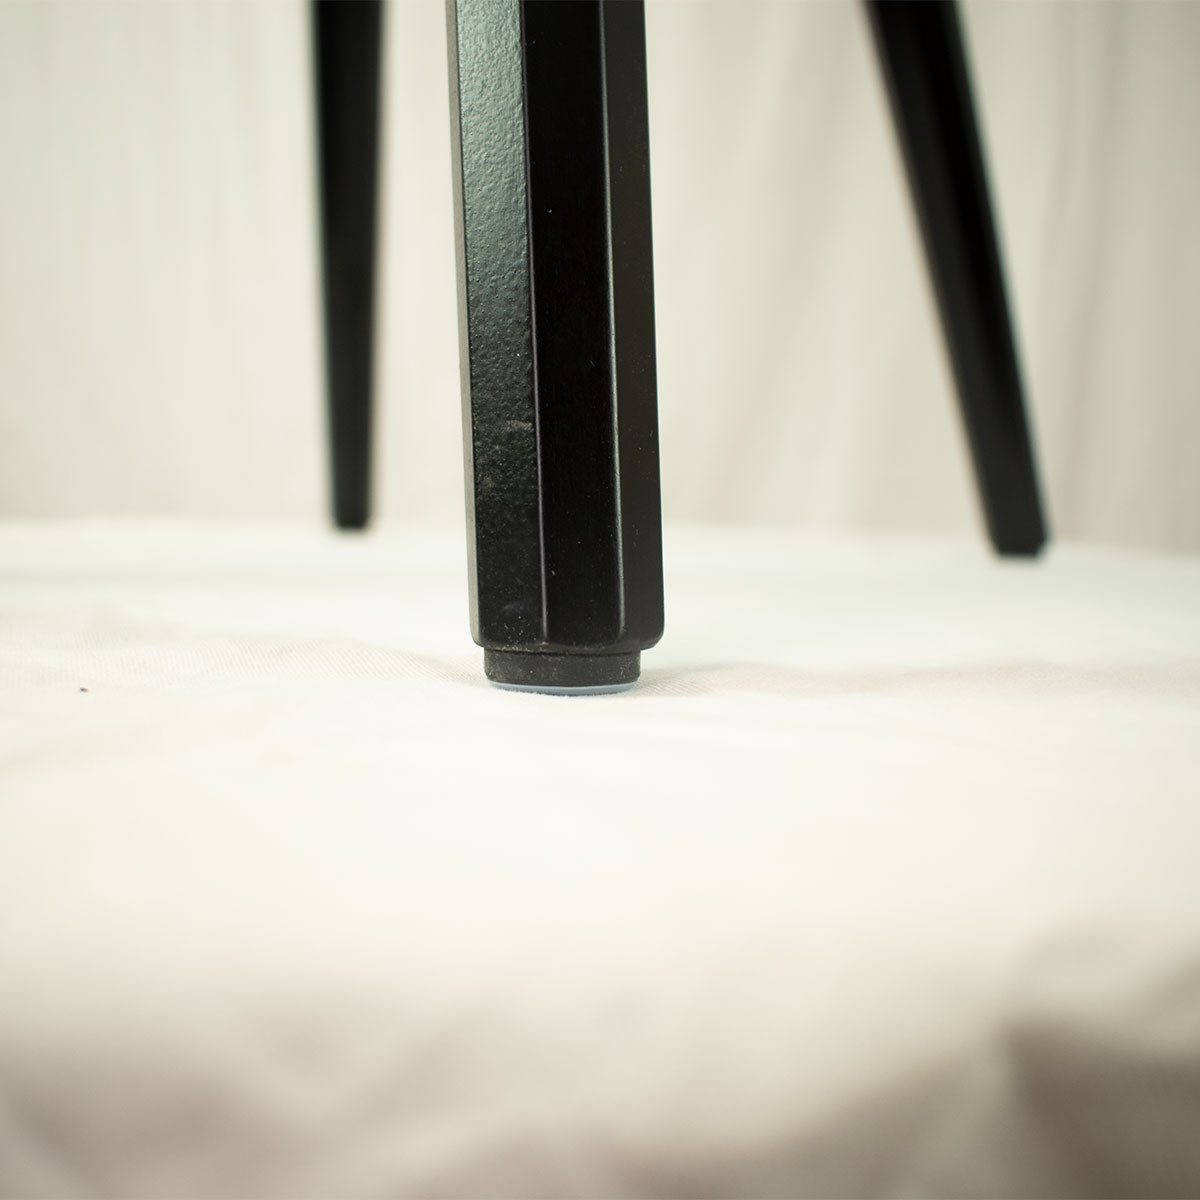 Eleganter Stuhl  'Black or White' | Vollholz | deckend lackiert | Griff herzförmig | in Schwarz oder Weiß erhältlich